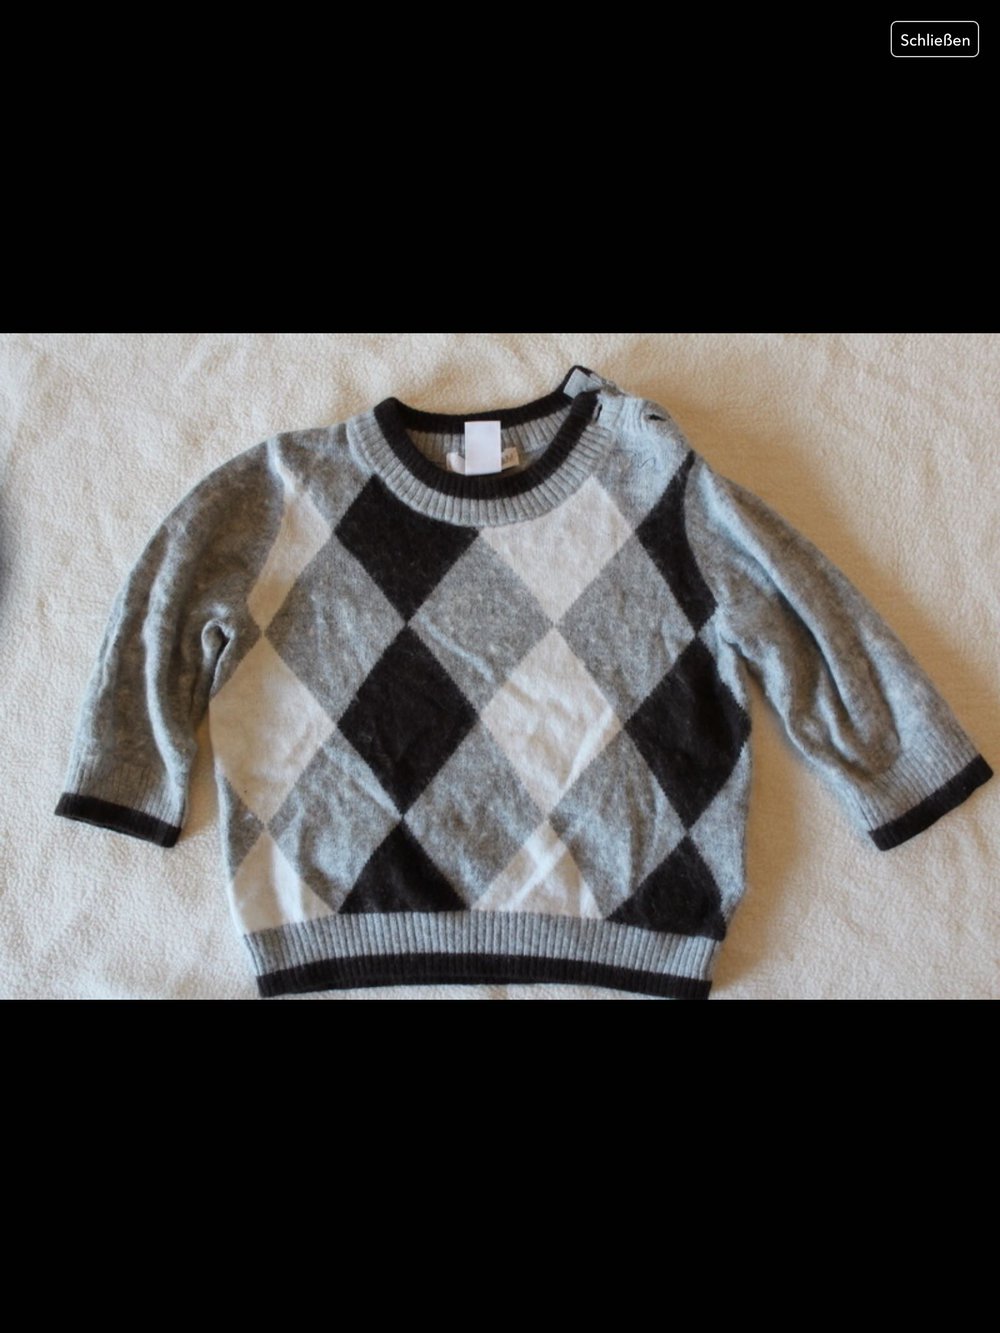 Flauschiger Pullover Rauten grau schwarz weiß gr.75